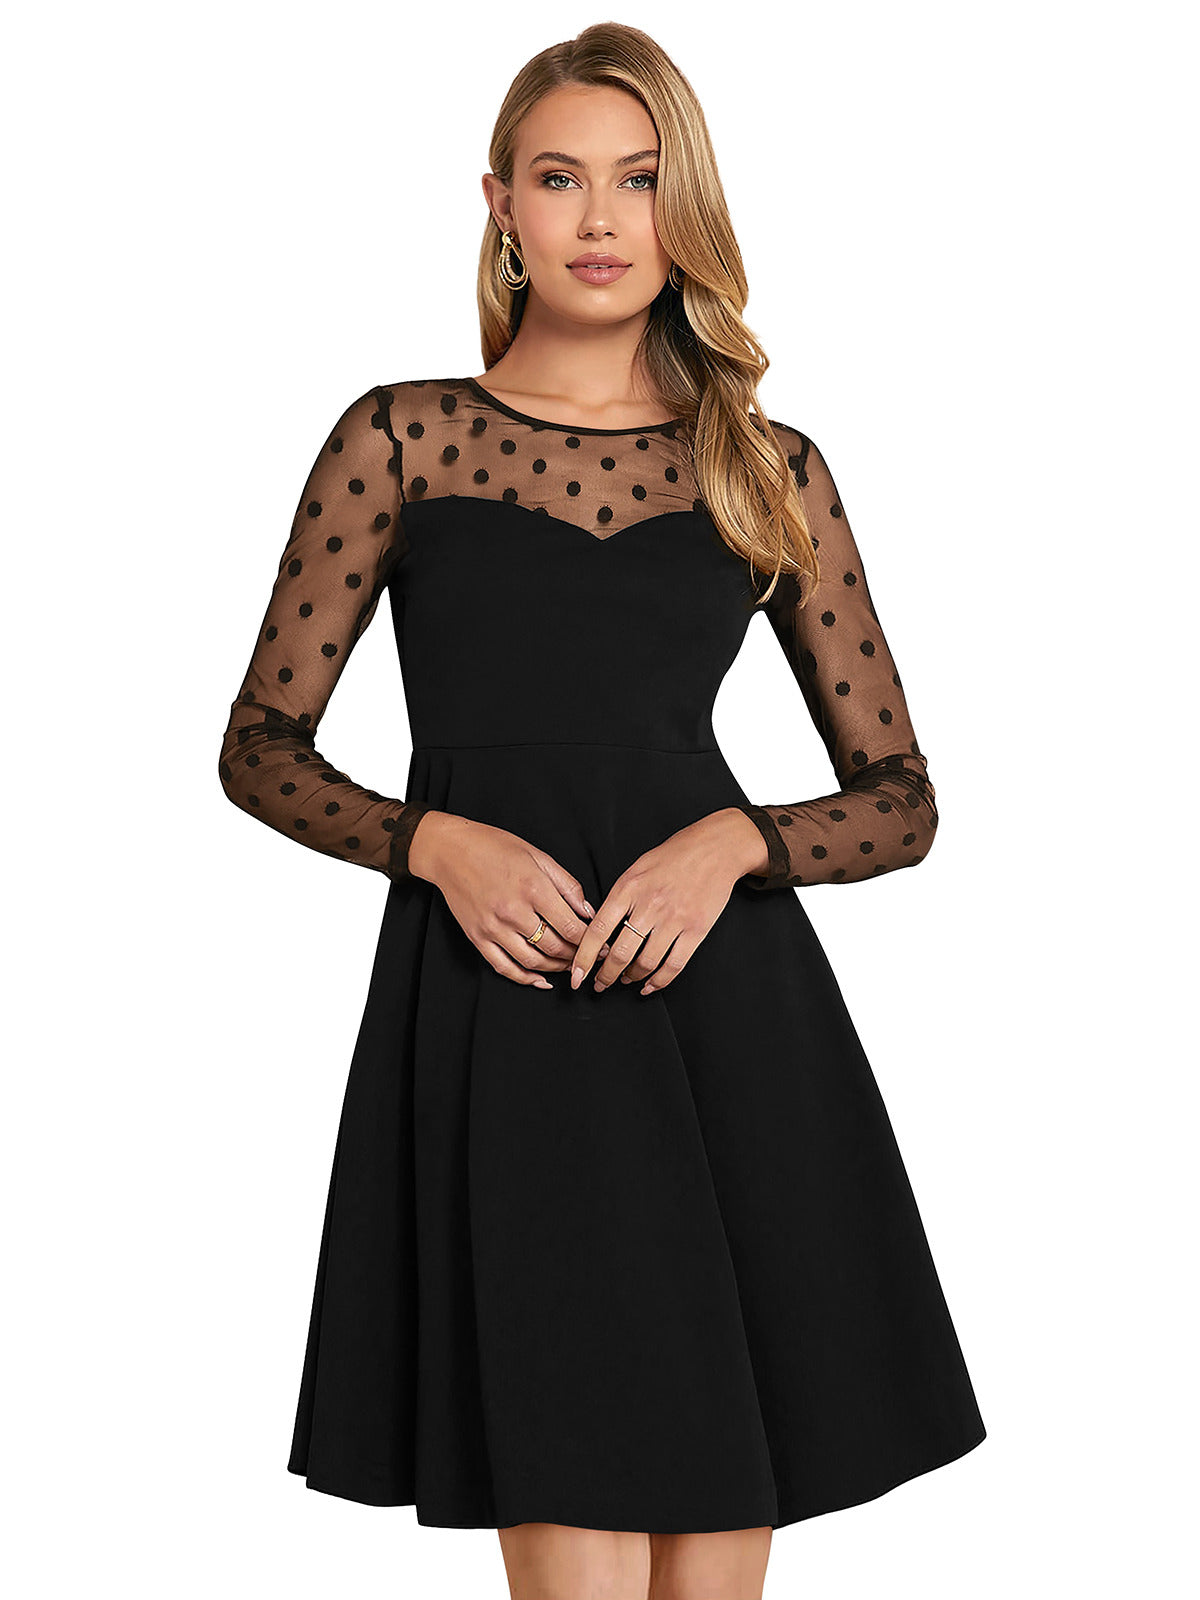 Odette Black Skater Knit Fabric Dress For Women